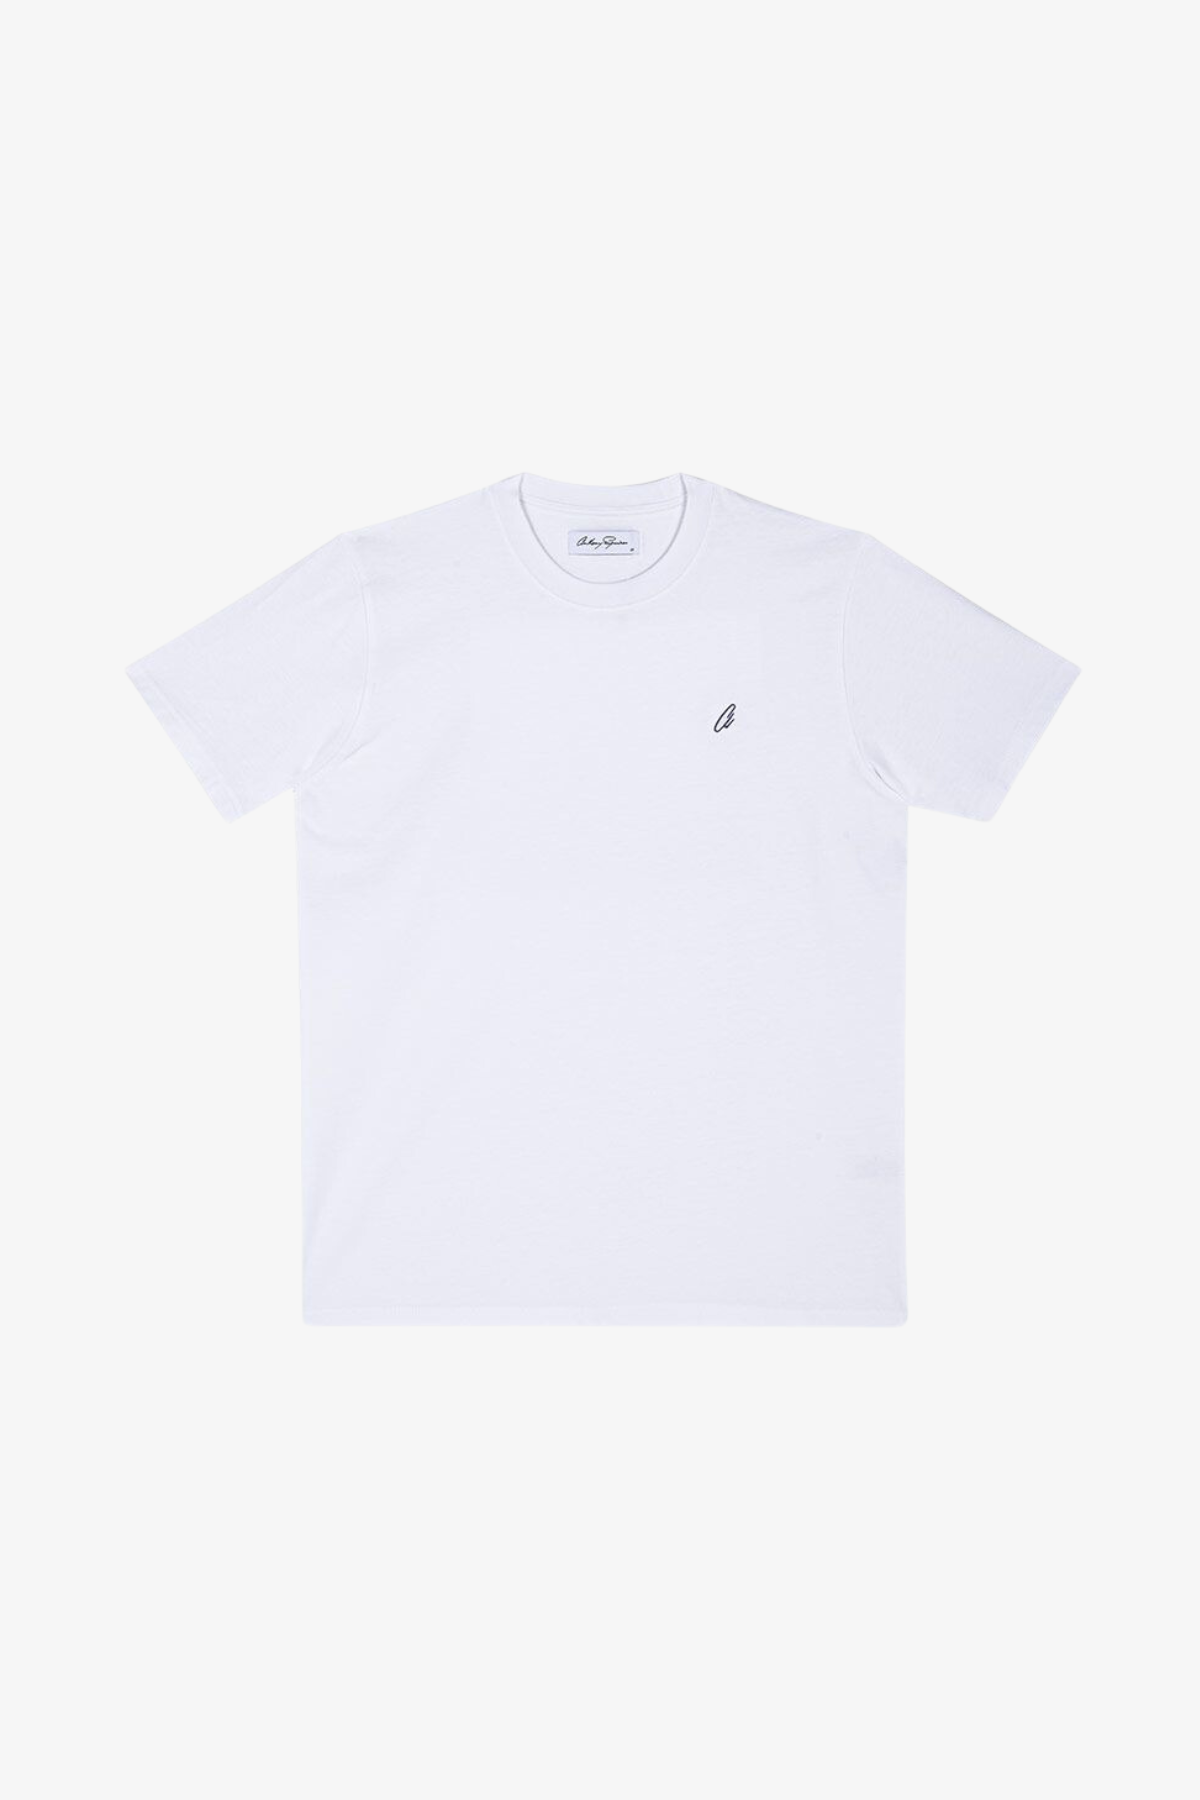 Edan - White T-shirt